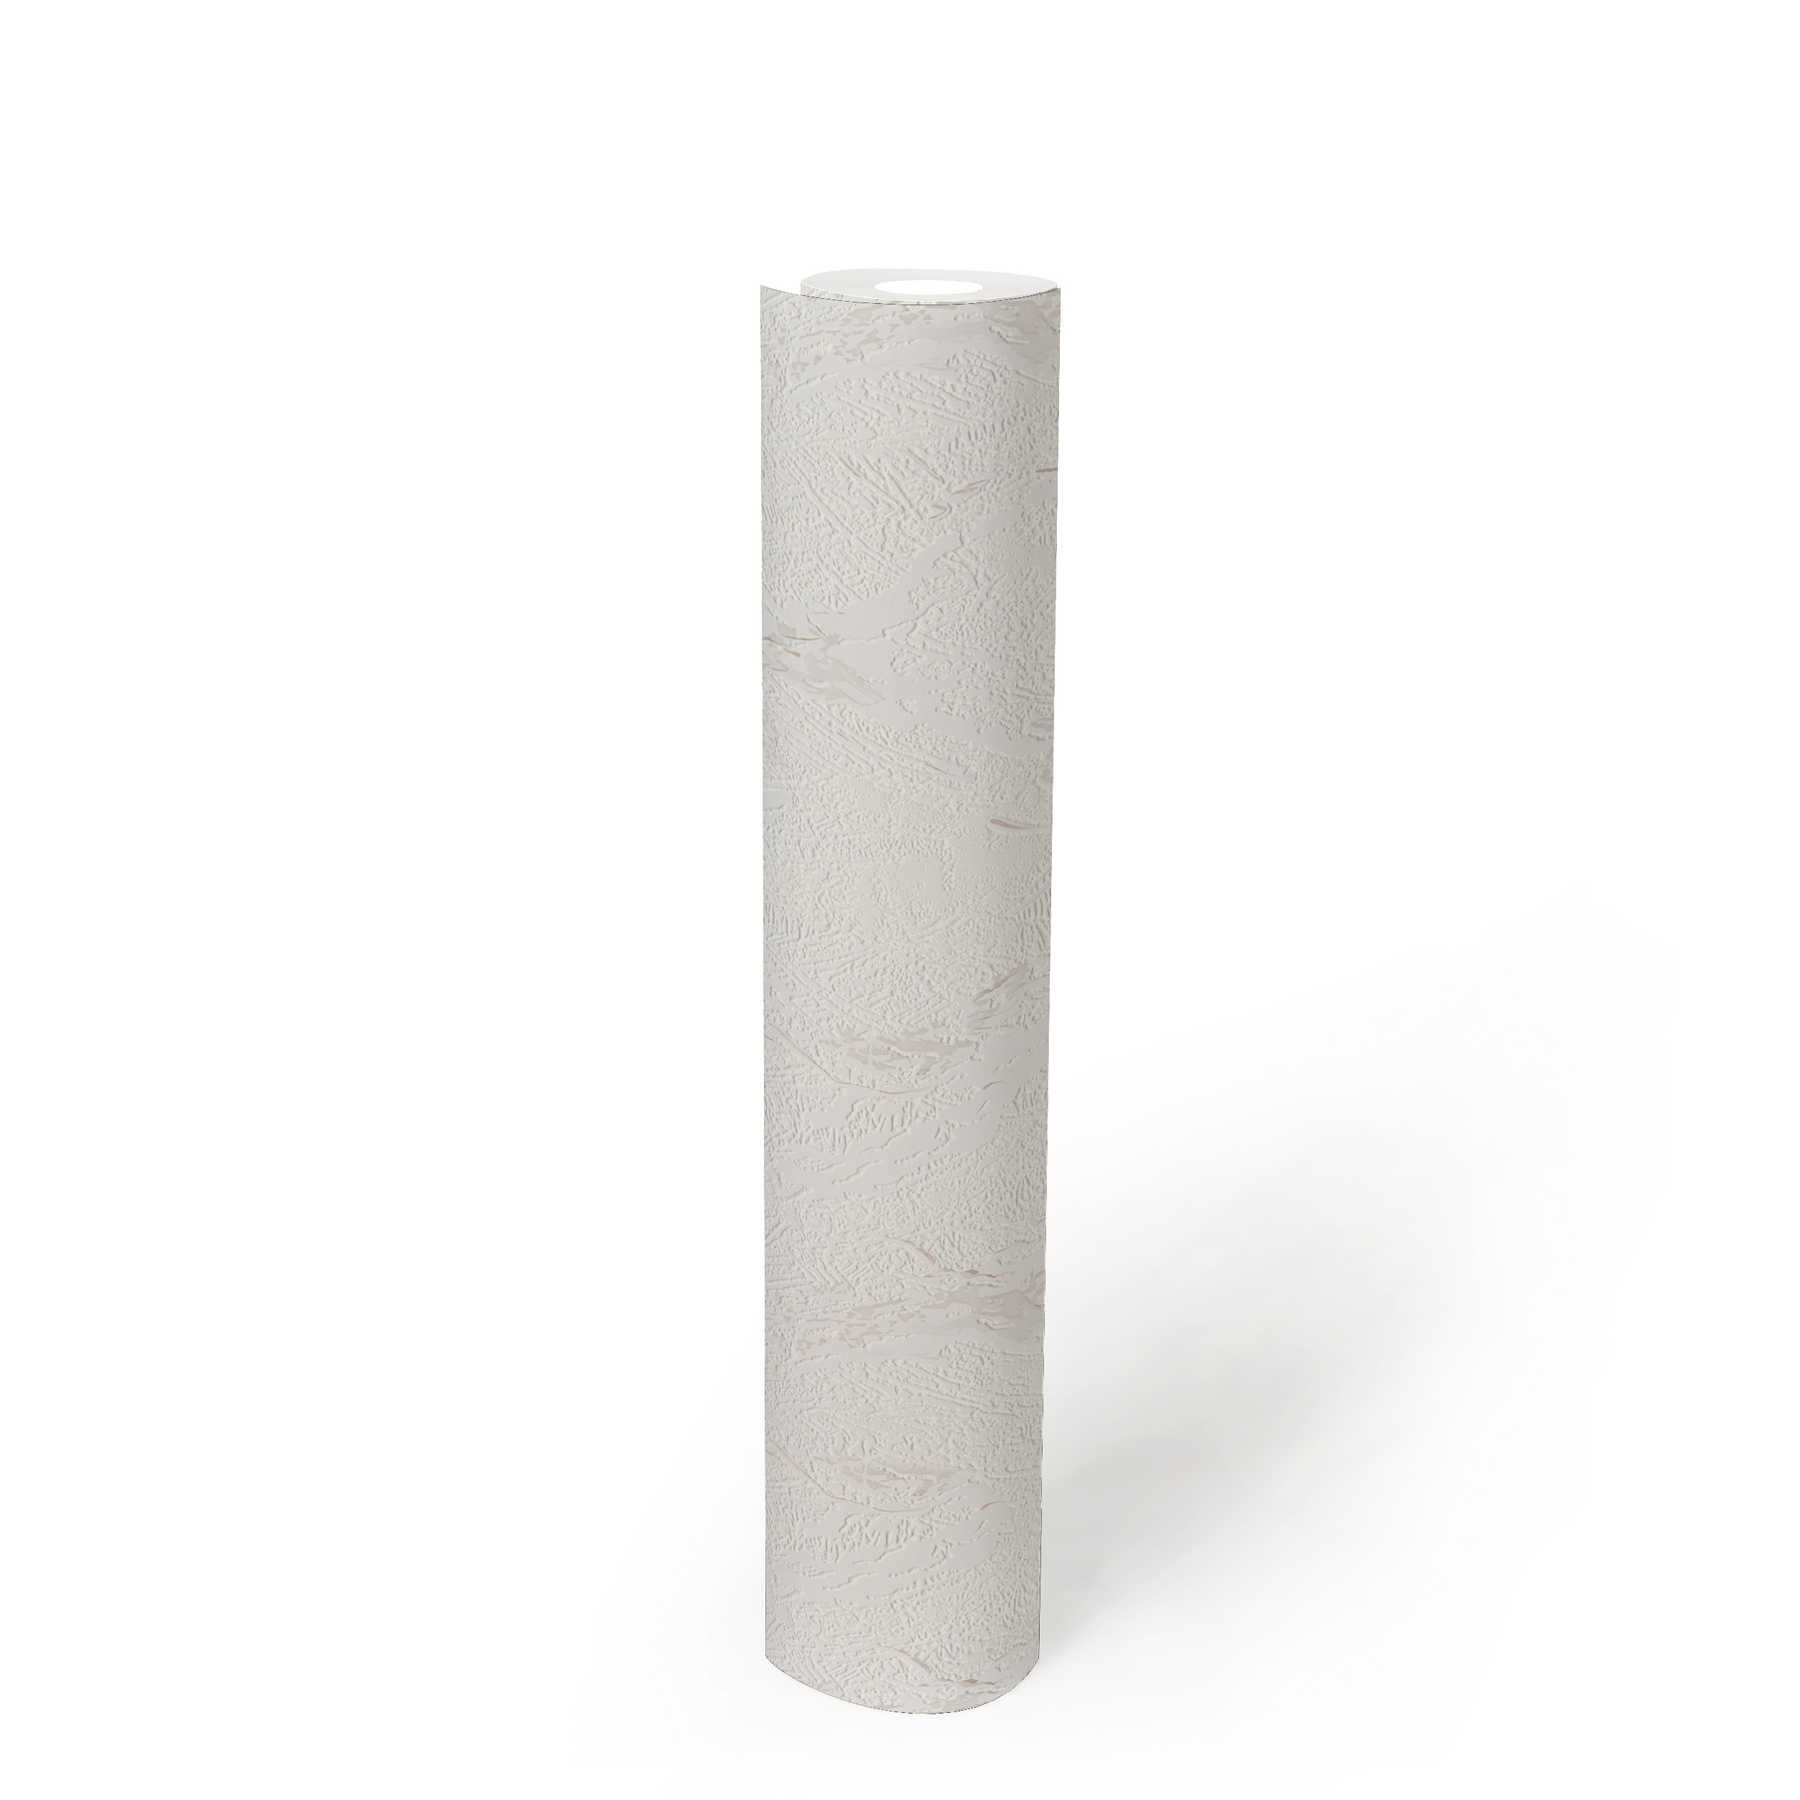             Gestructureerd Papierbehang met gipslook - bruin, wit
        